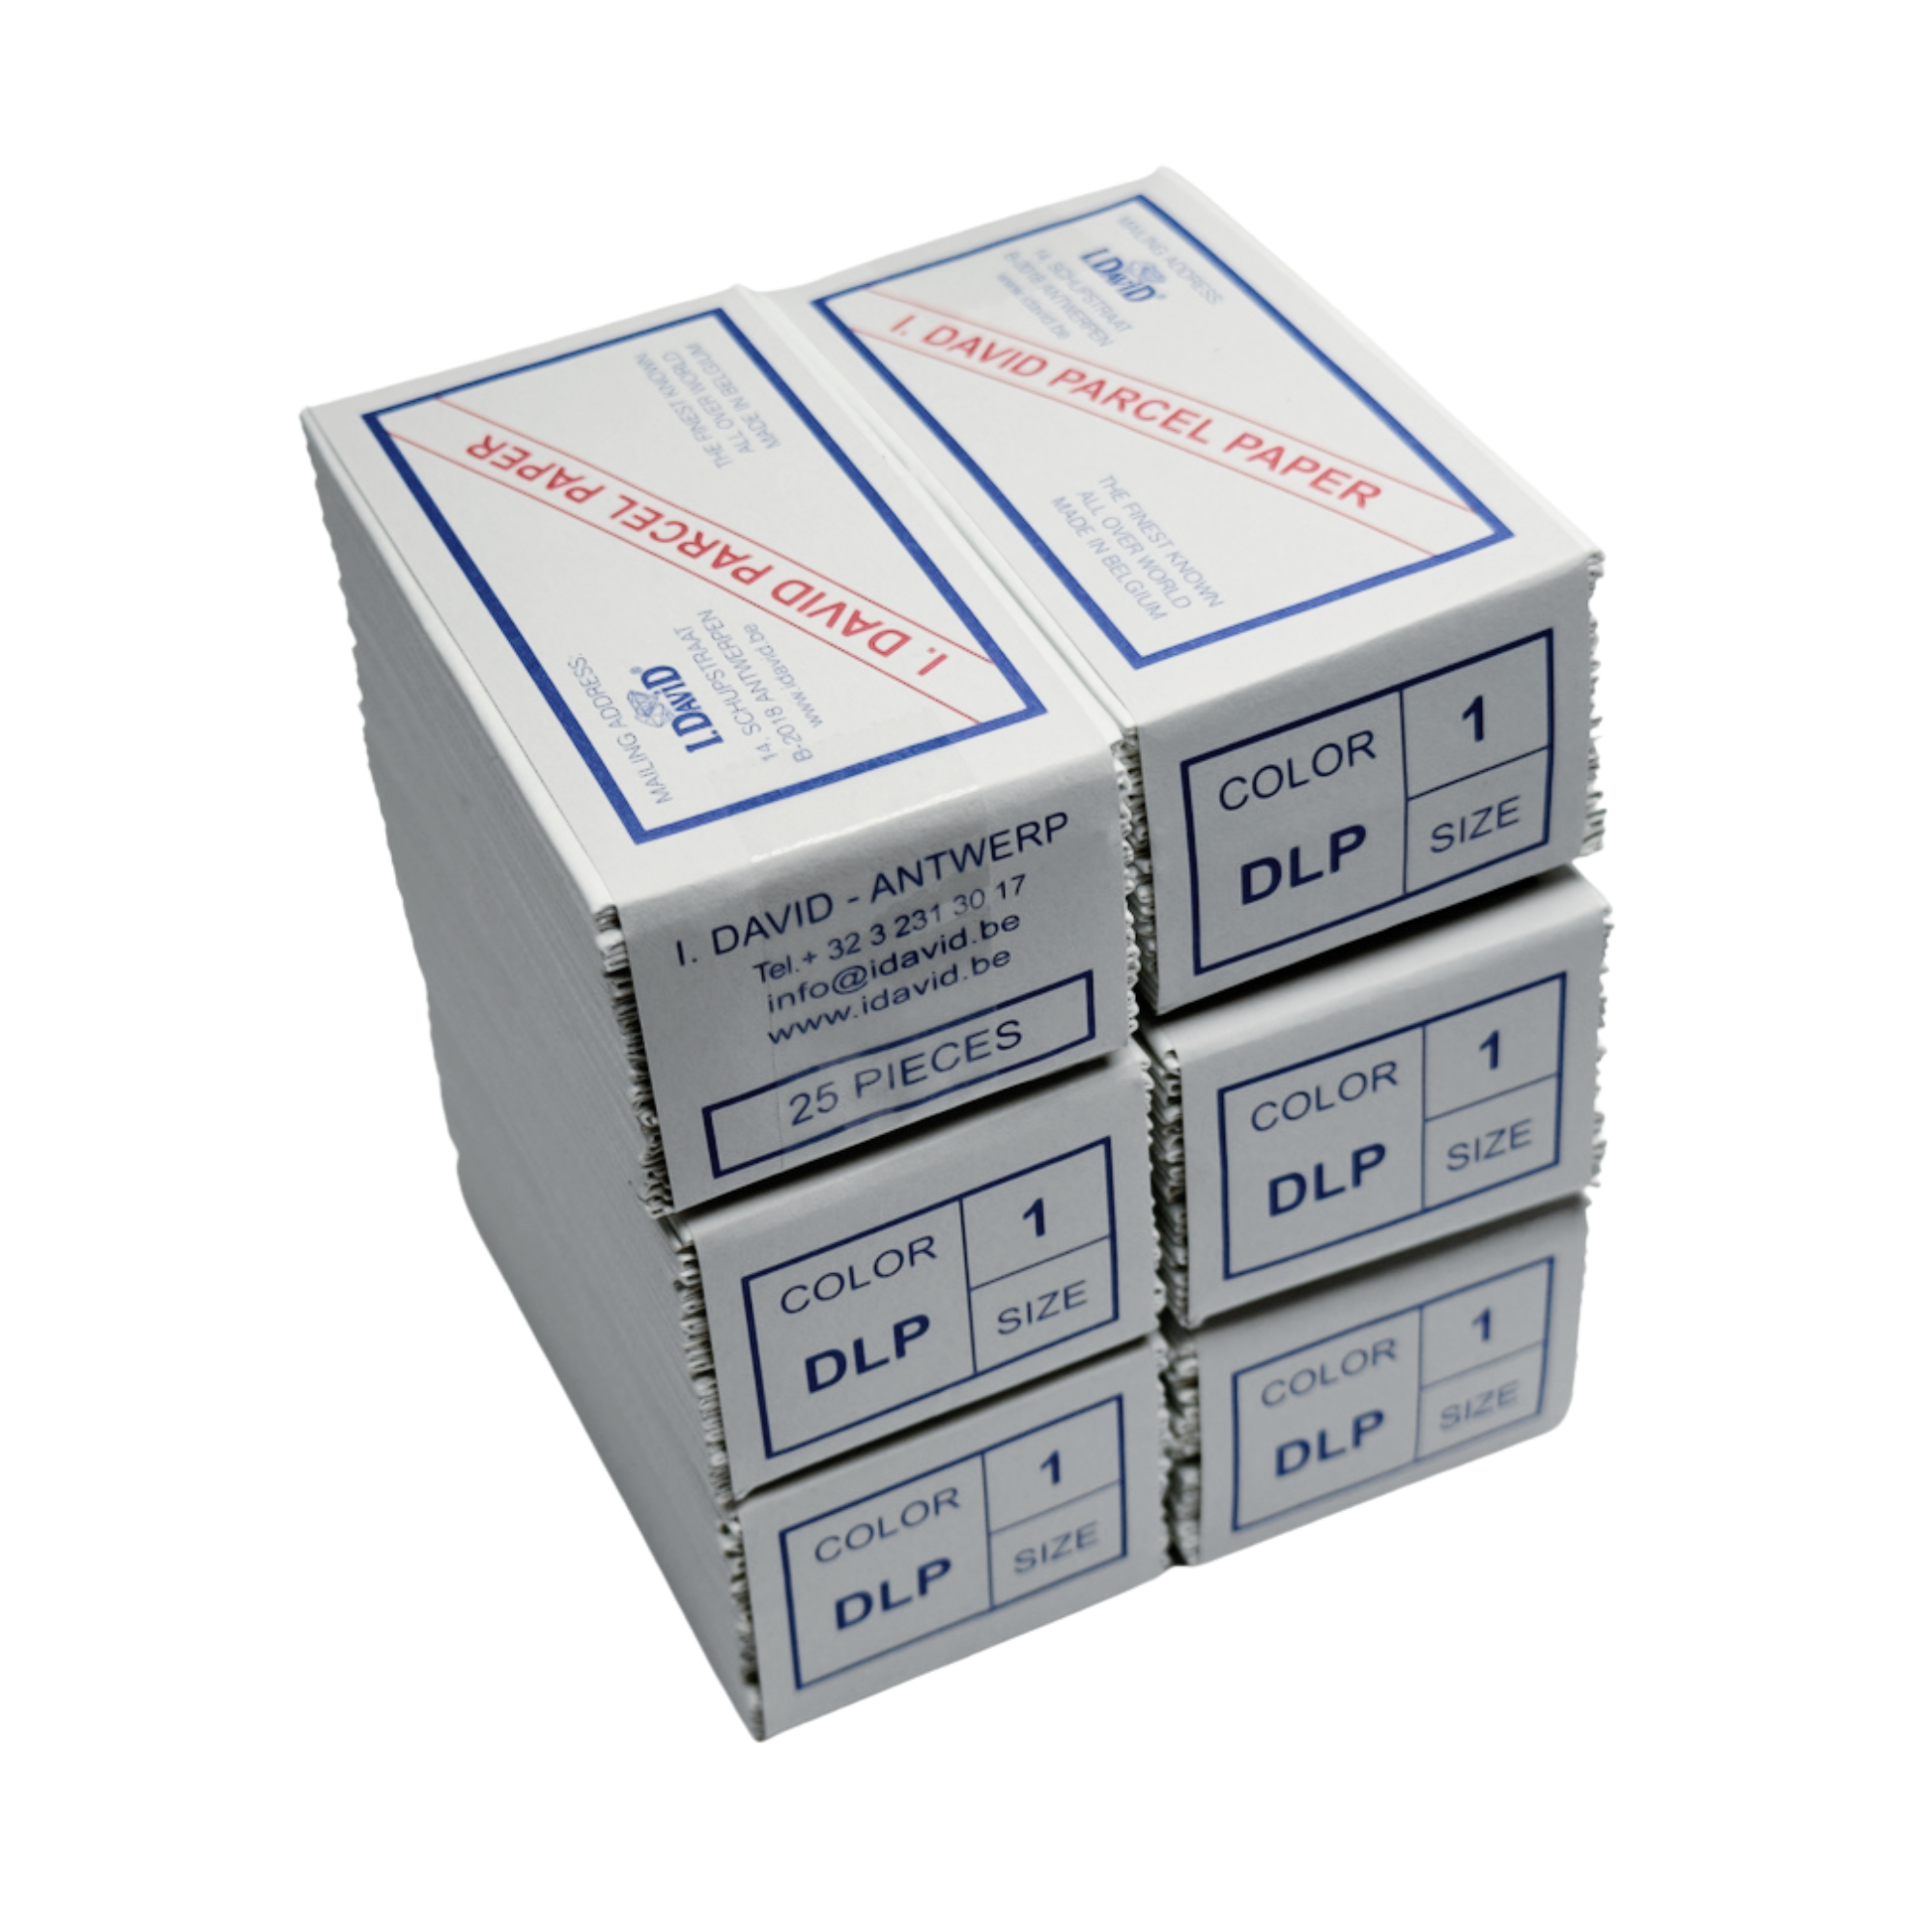 I.DAVID - DLP (Diamond Parcel Papers) Premiumpapperskuvert för ädelstenar